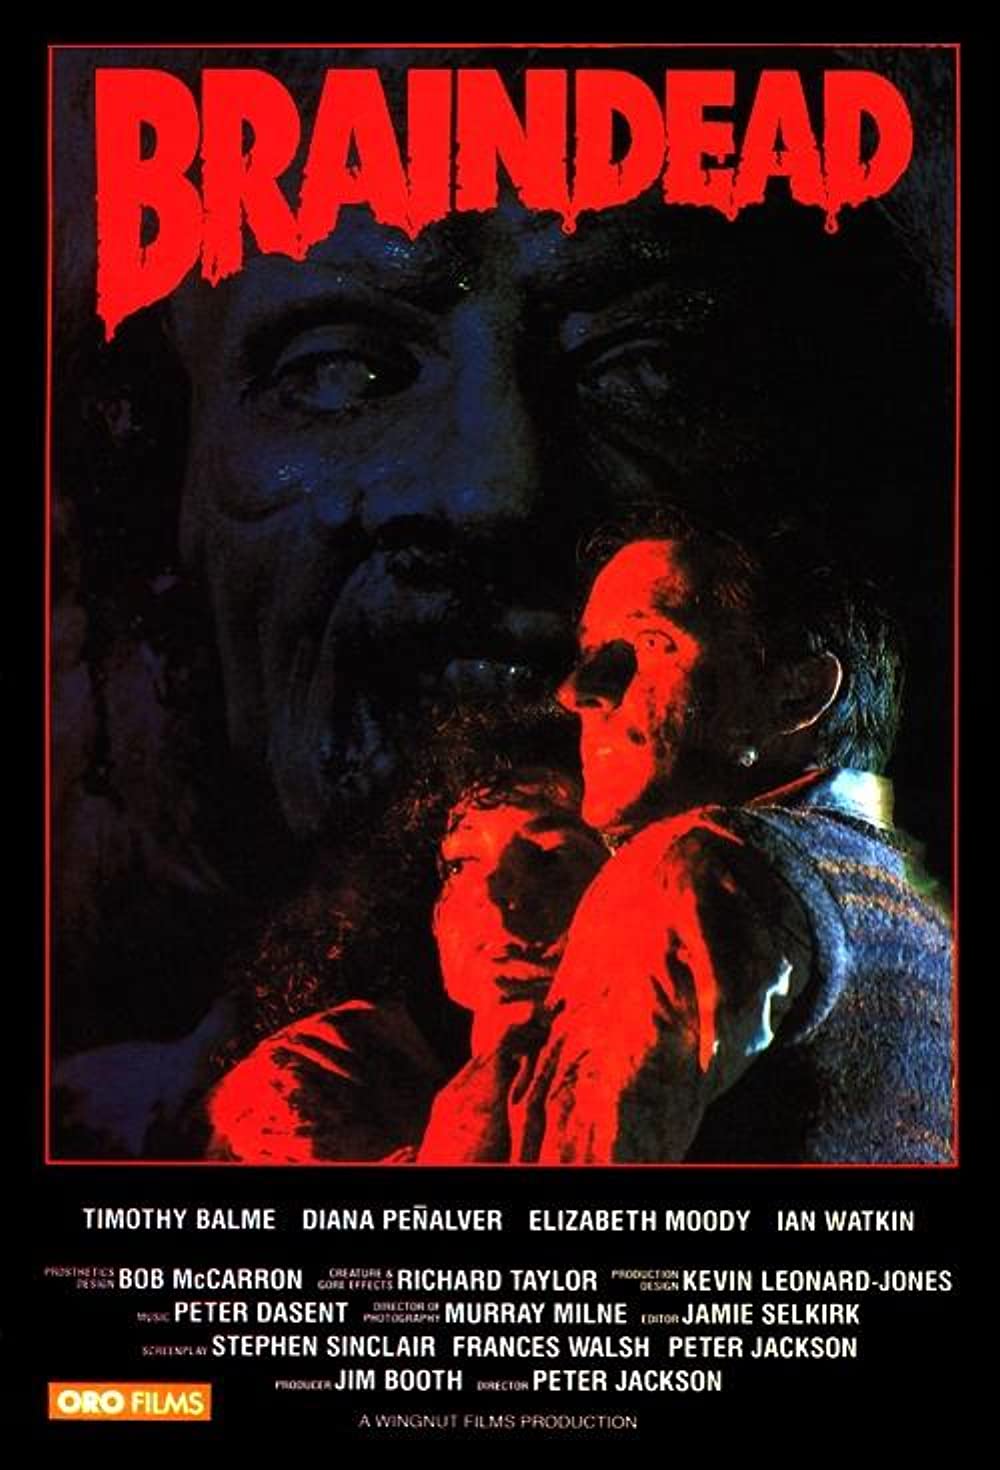 ดูหนังออนไลน์ Dead Alive (Braindead) (1992) ซอมบี้ผีกระชากหัว (ซับไทย)